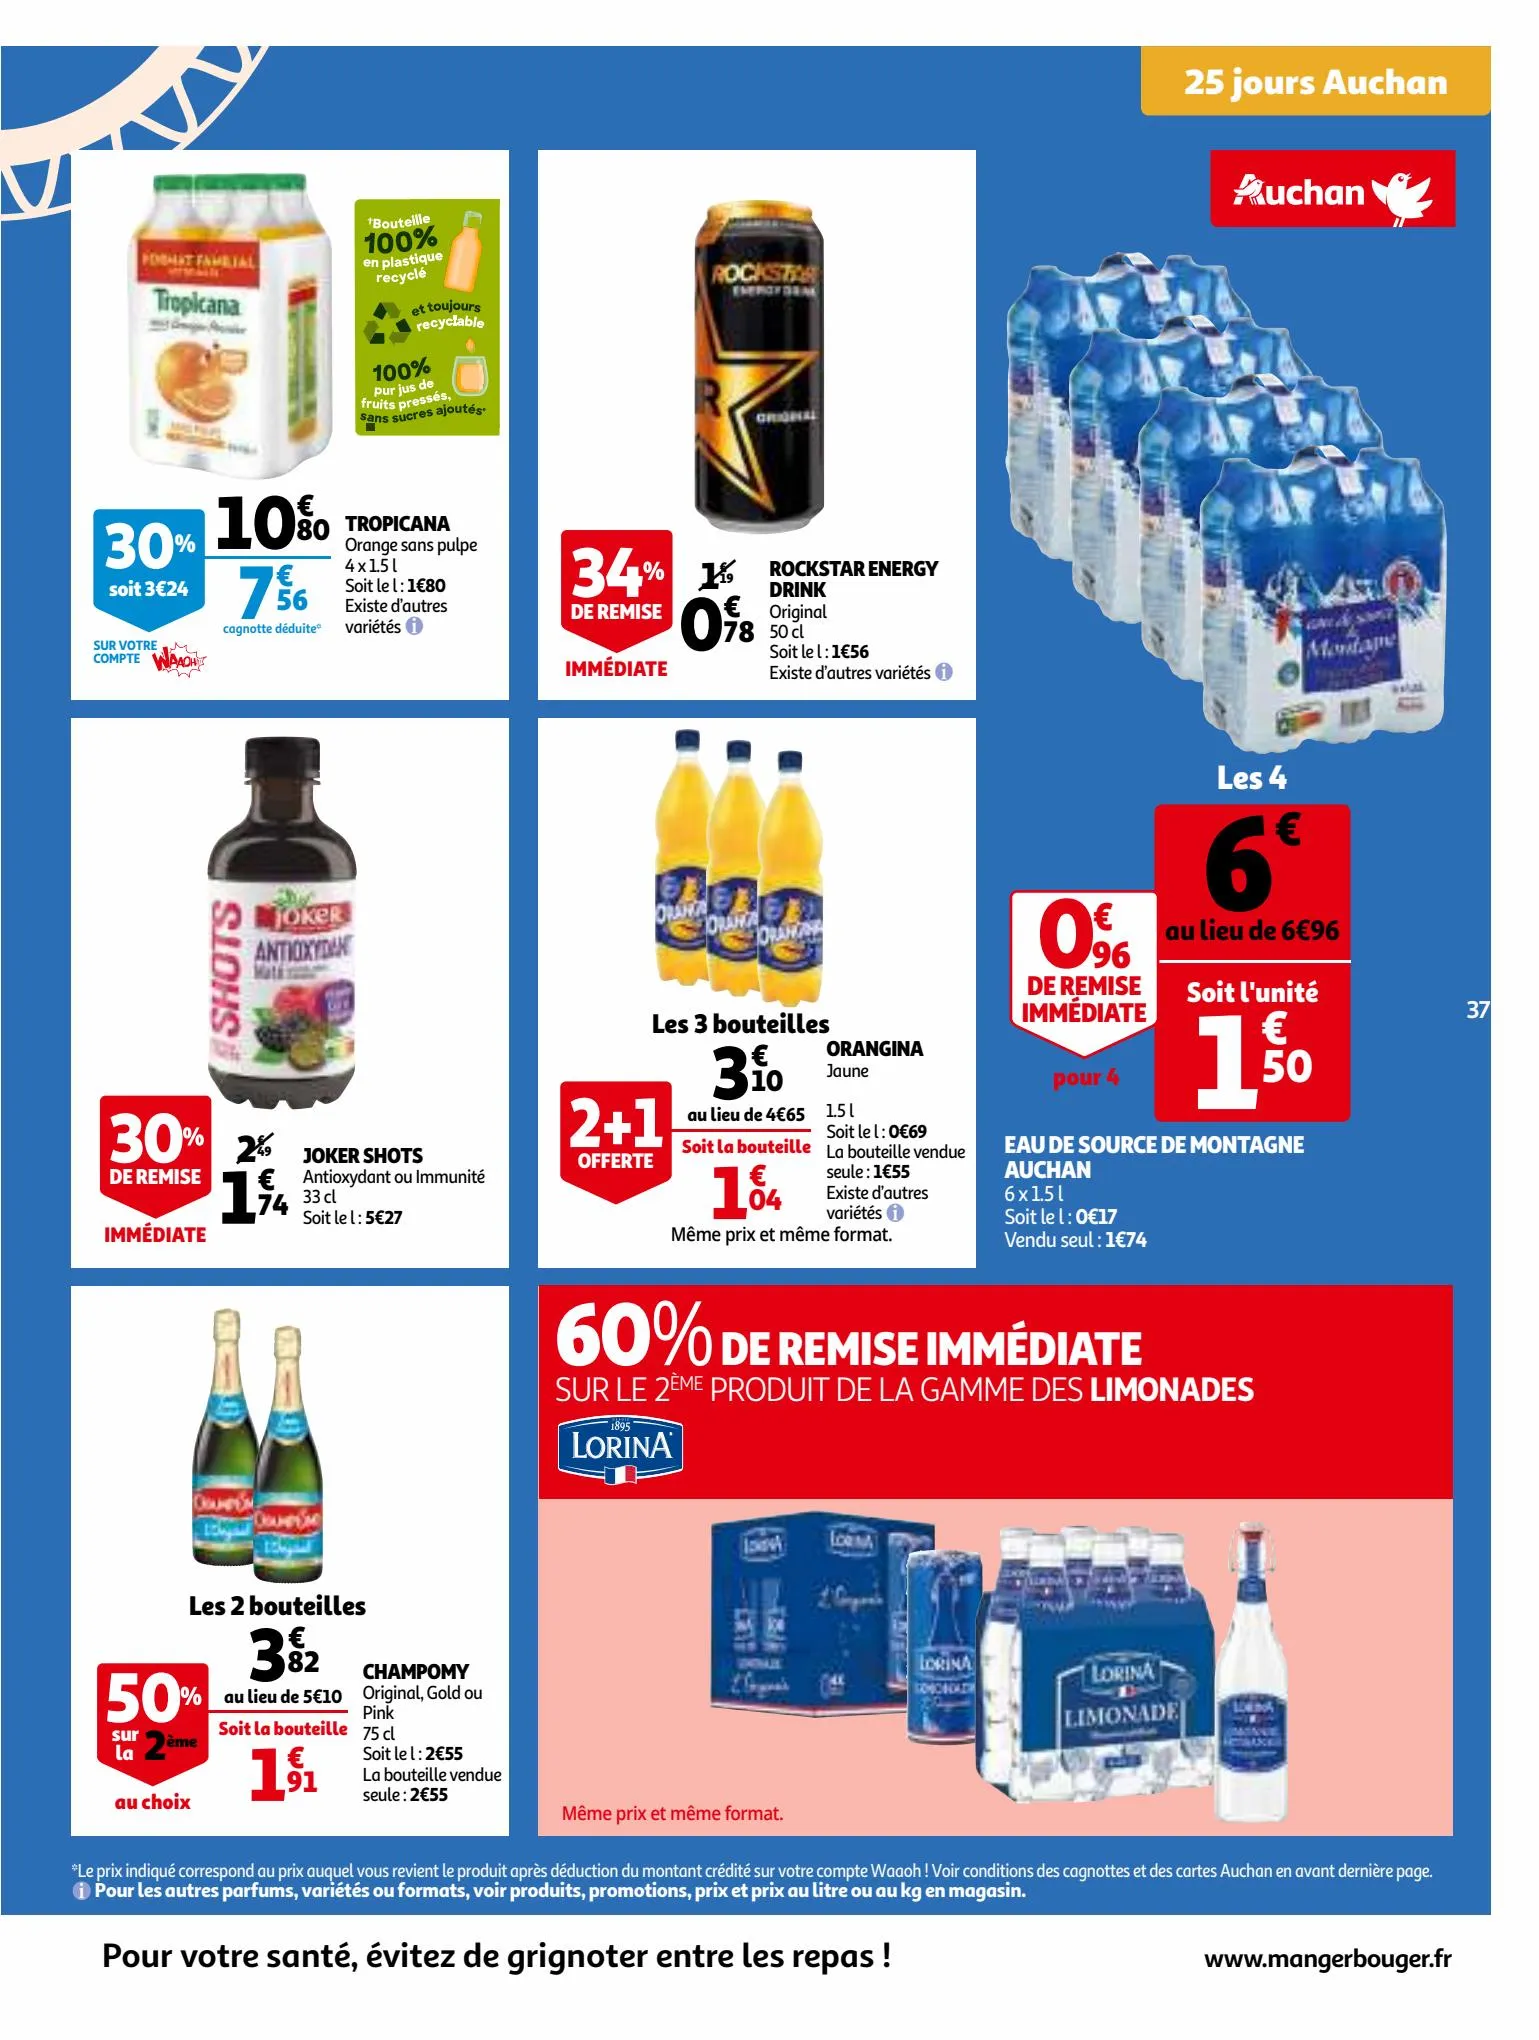 Catalogue 25 Jours Auchan, page 00037